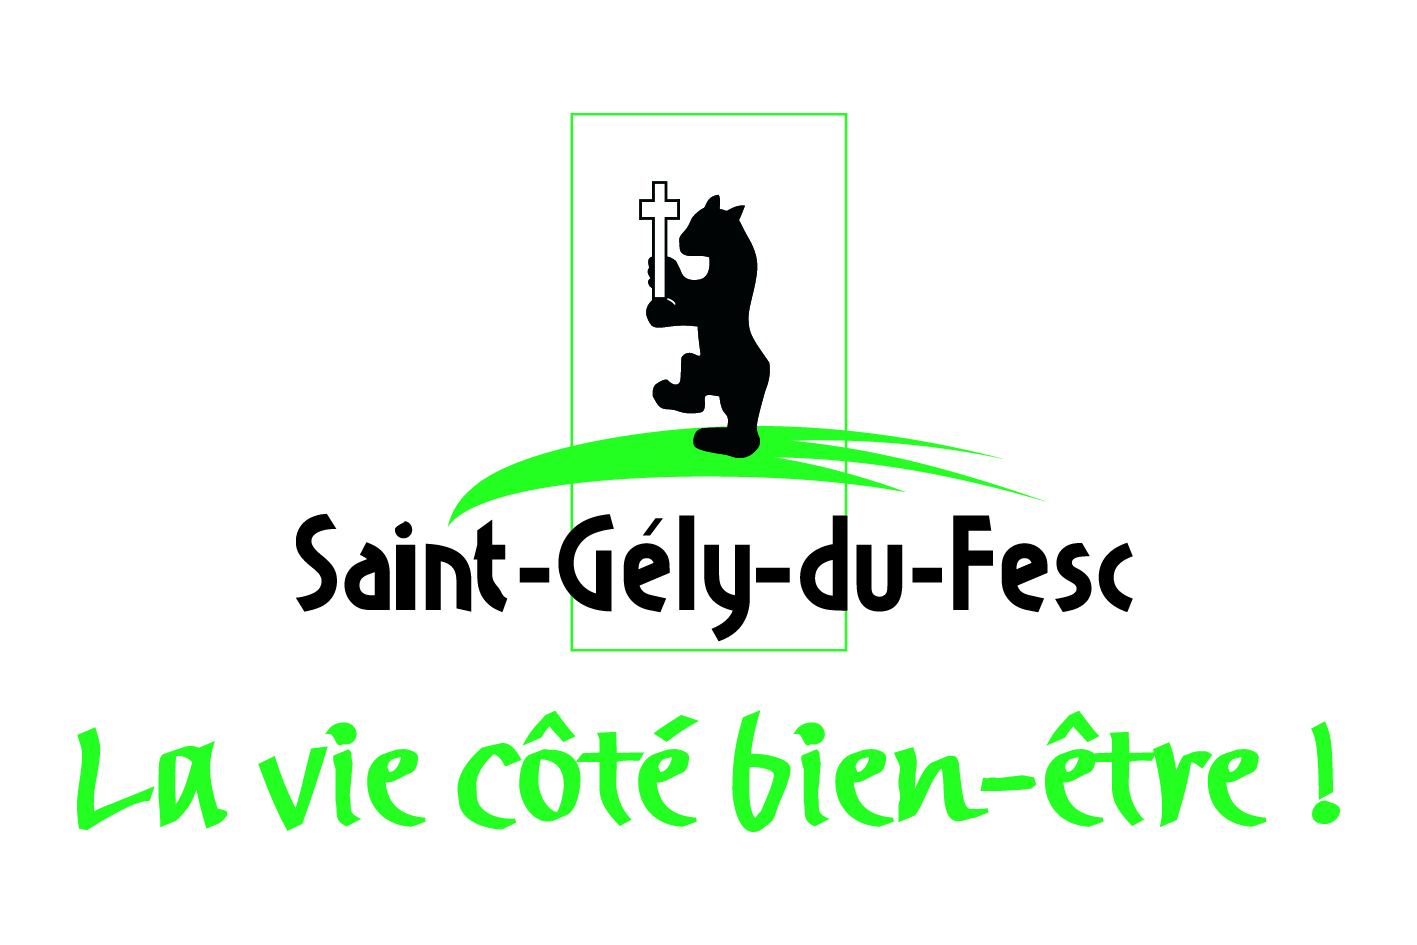 Saint-Gely-du-Fesc.jpg